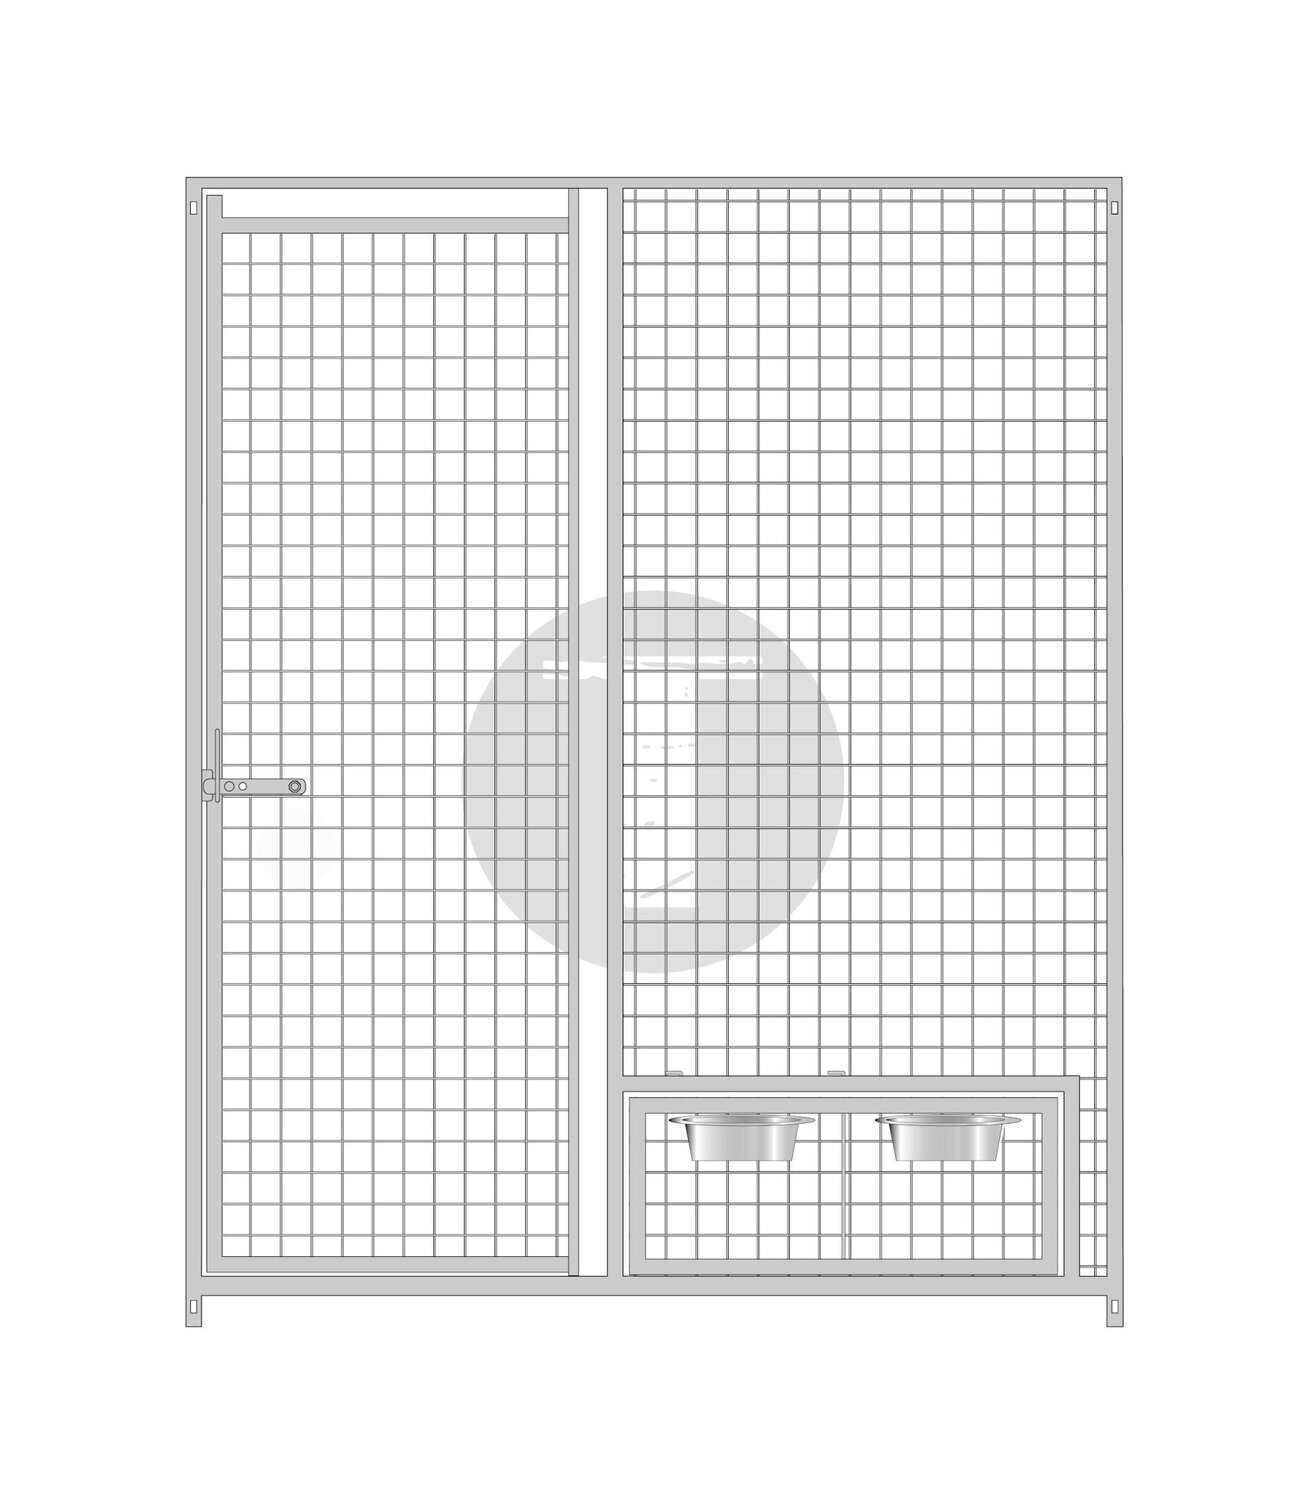 Gitterelement Tür links und schwenkbarem Futterset 5 x 5 cm - 184 cm hoch, Länge: 150cm